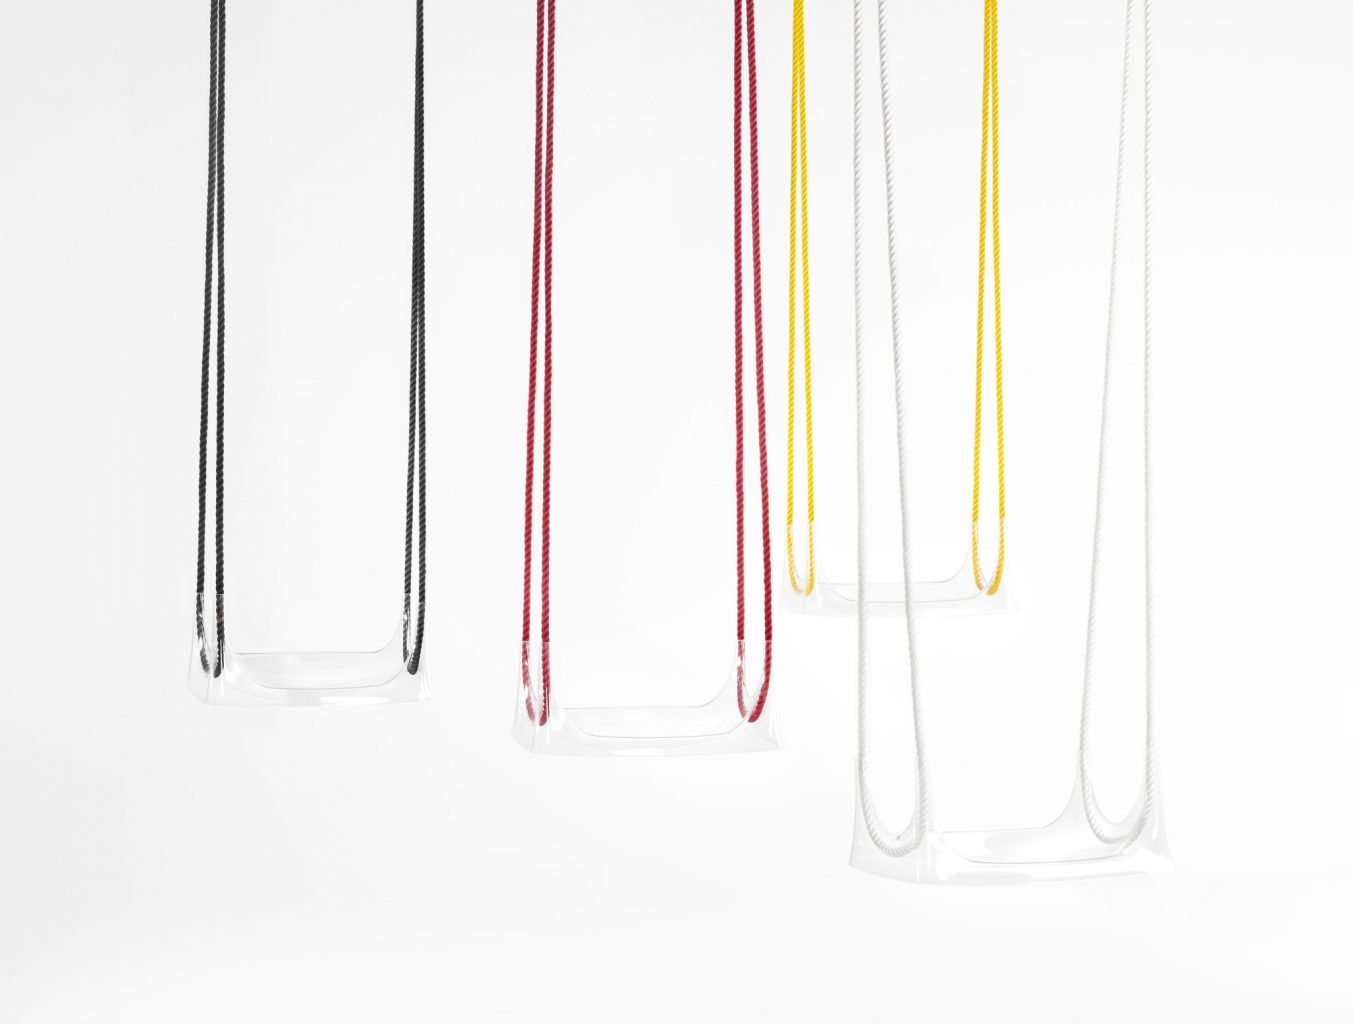 Fliegst du oder schaukelst du: die transparente Schaukel von Philippe Starck spielt mit der Wahrnehmung